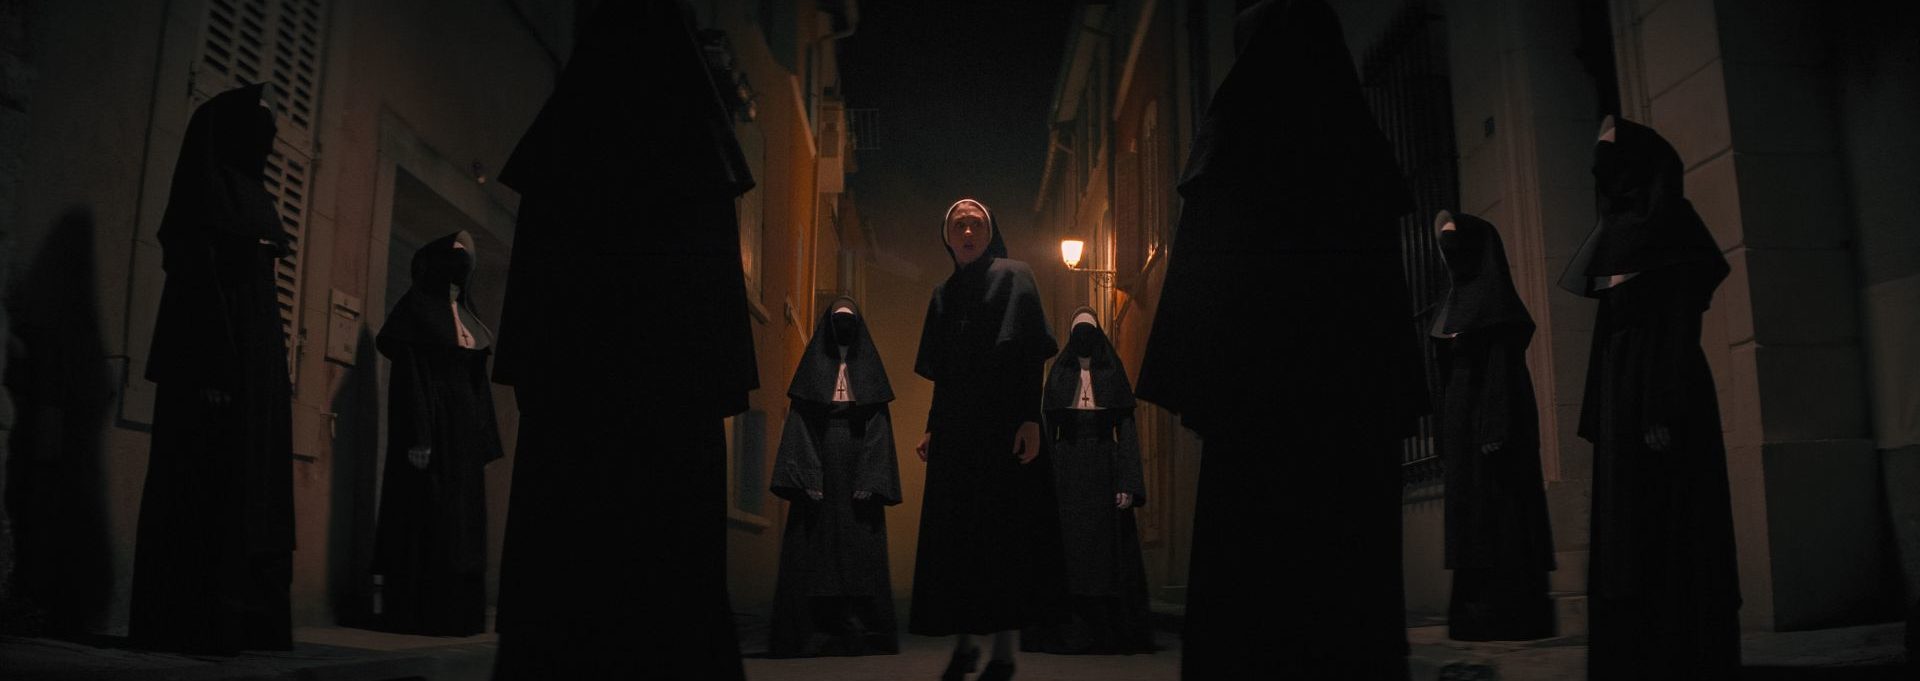 The Nun II – Erster Trailer zeigt Rückkehr der dämonischen Nonne